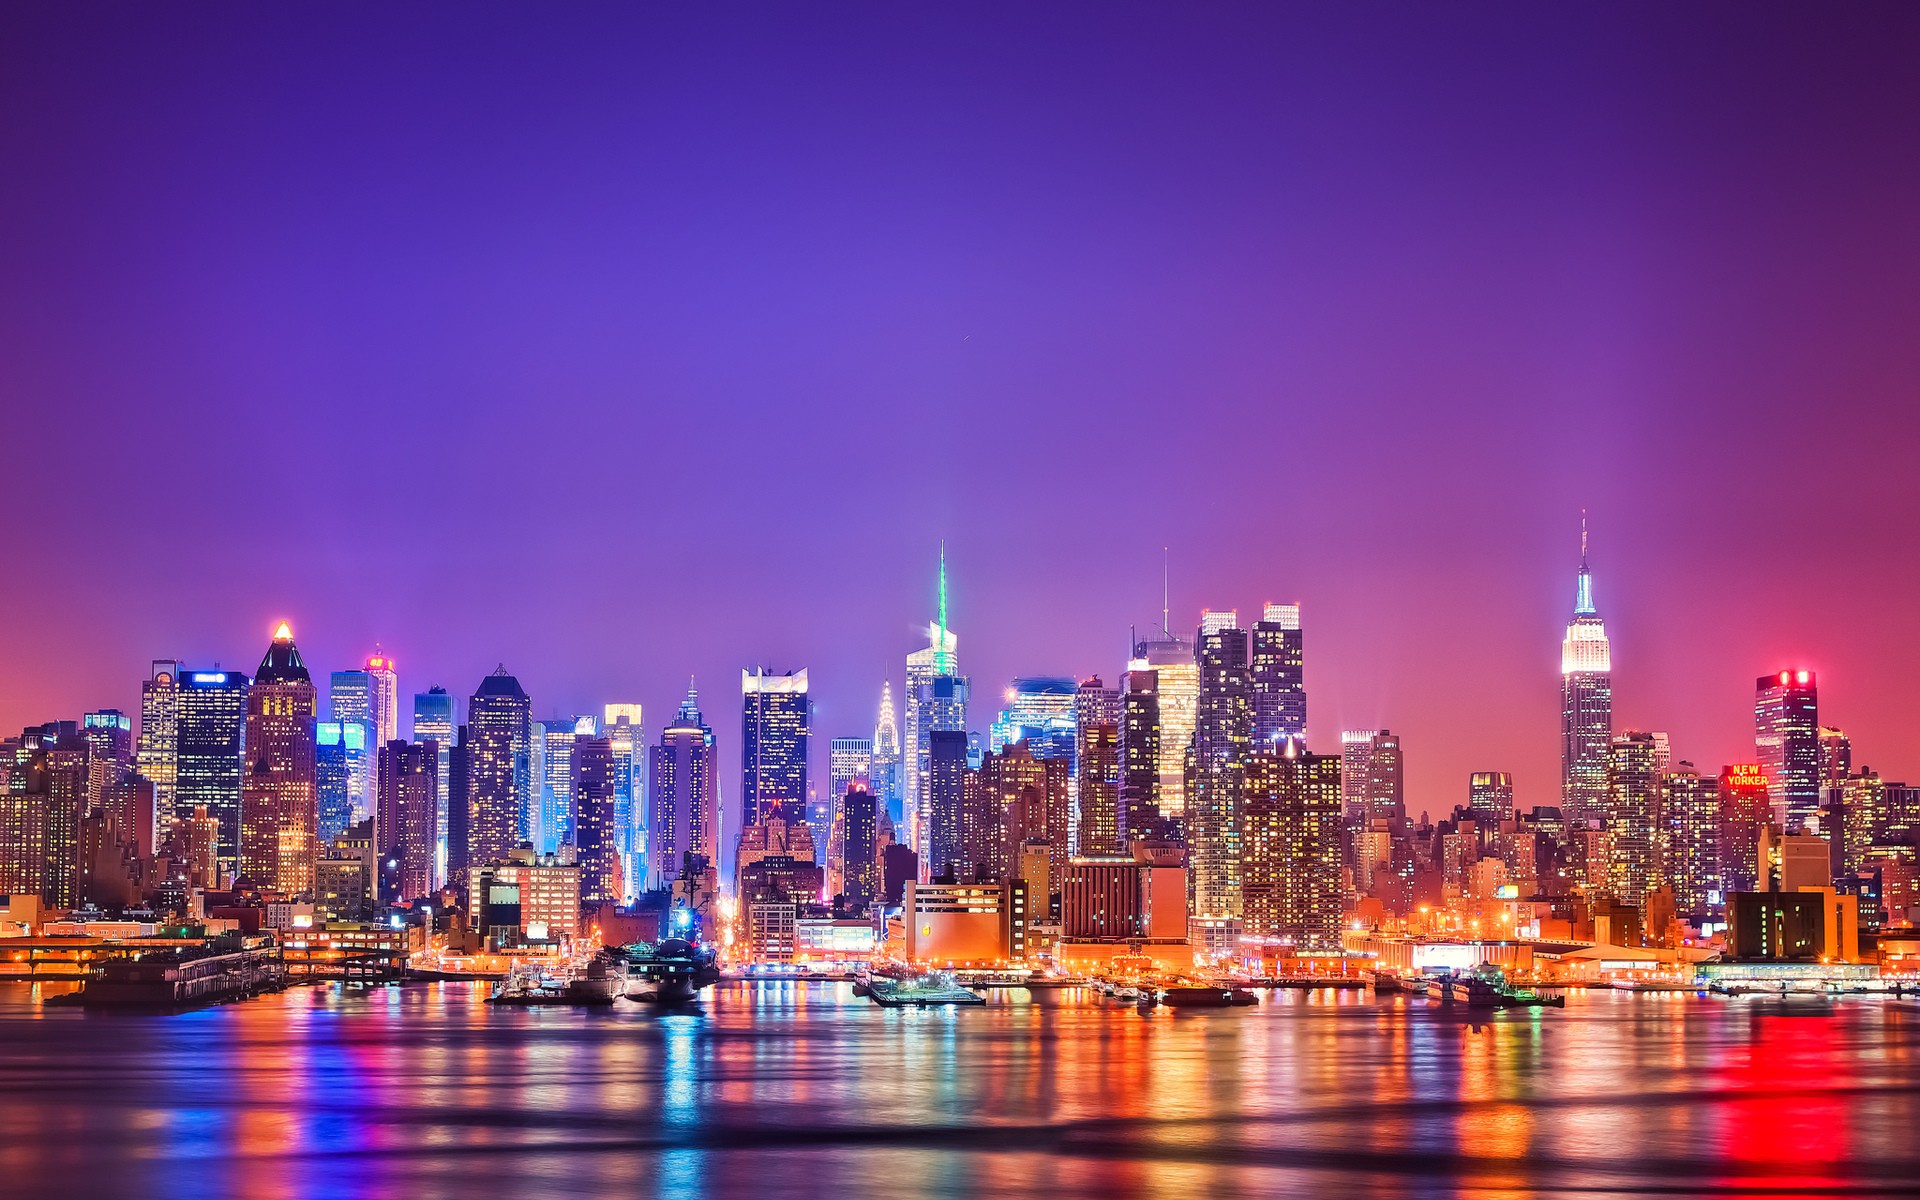 Hãy xem hình ảnh Tường nhà HD của New York để tận hưởng vẻ đẹp của bầu trời thành phố lãng mạn và phấn khích. Từ giờ trở đi, bạn sẽ không thể rời mắt khỏi các tòa nhà chọc trời cao tầng với tầm nhìn đầy hấp dẫn của chúng.